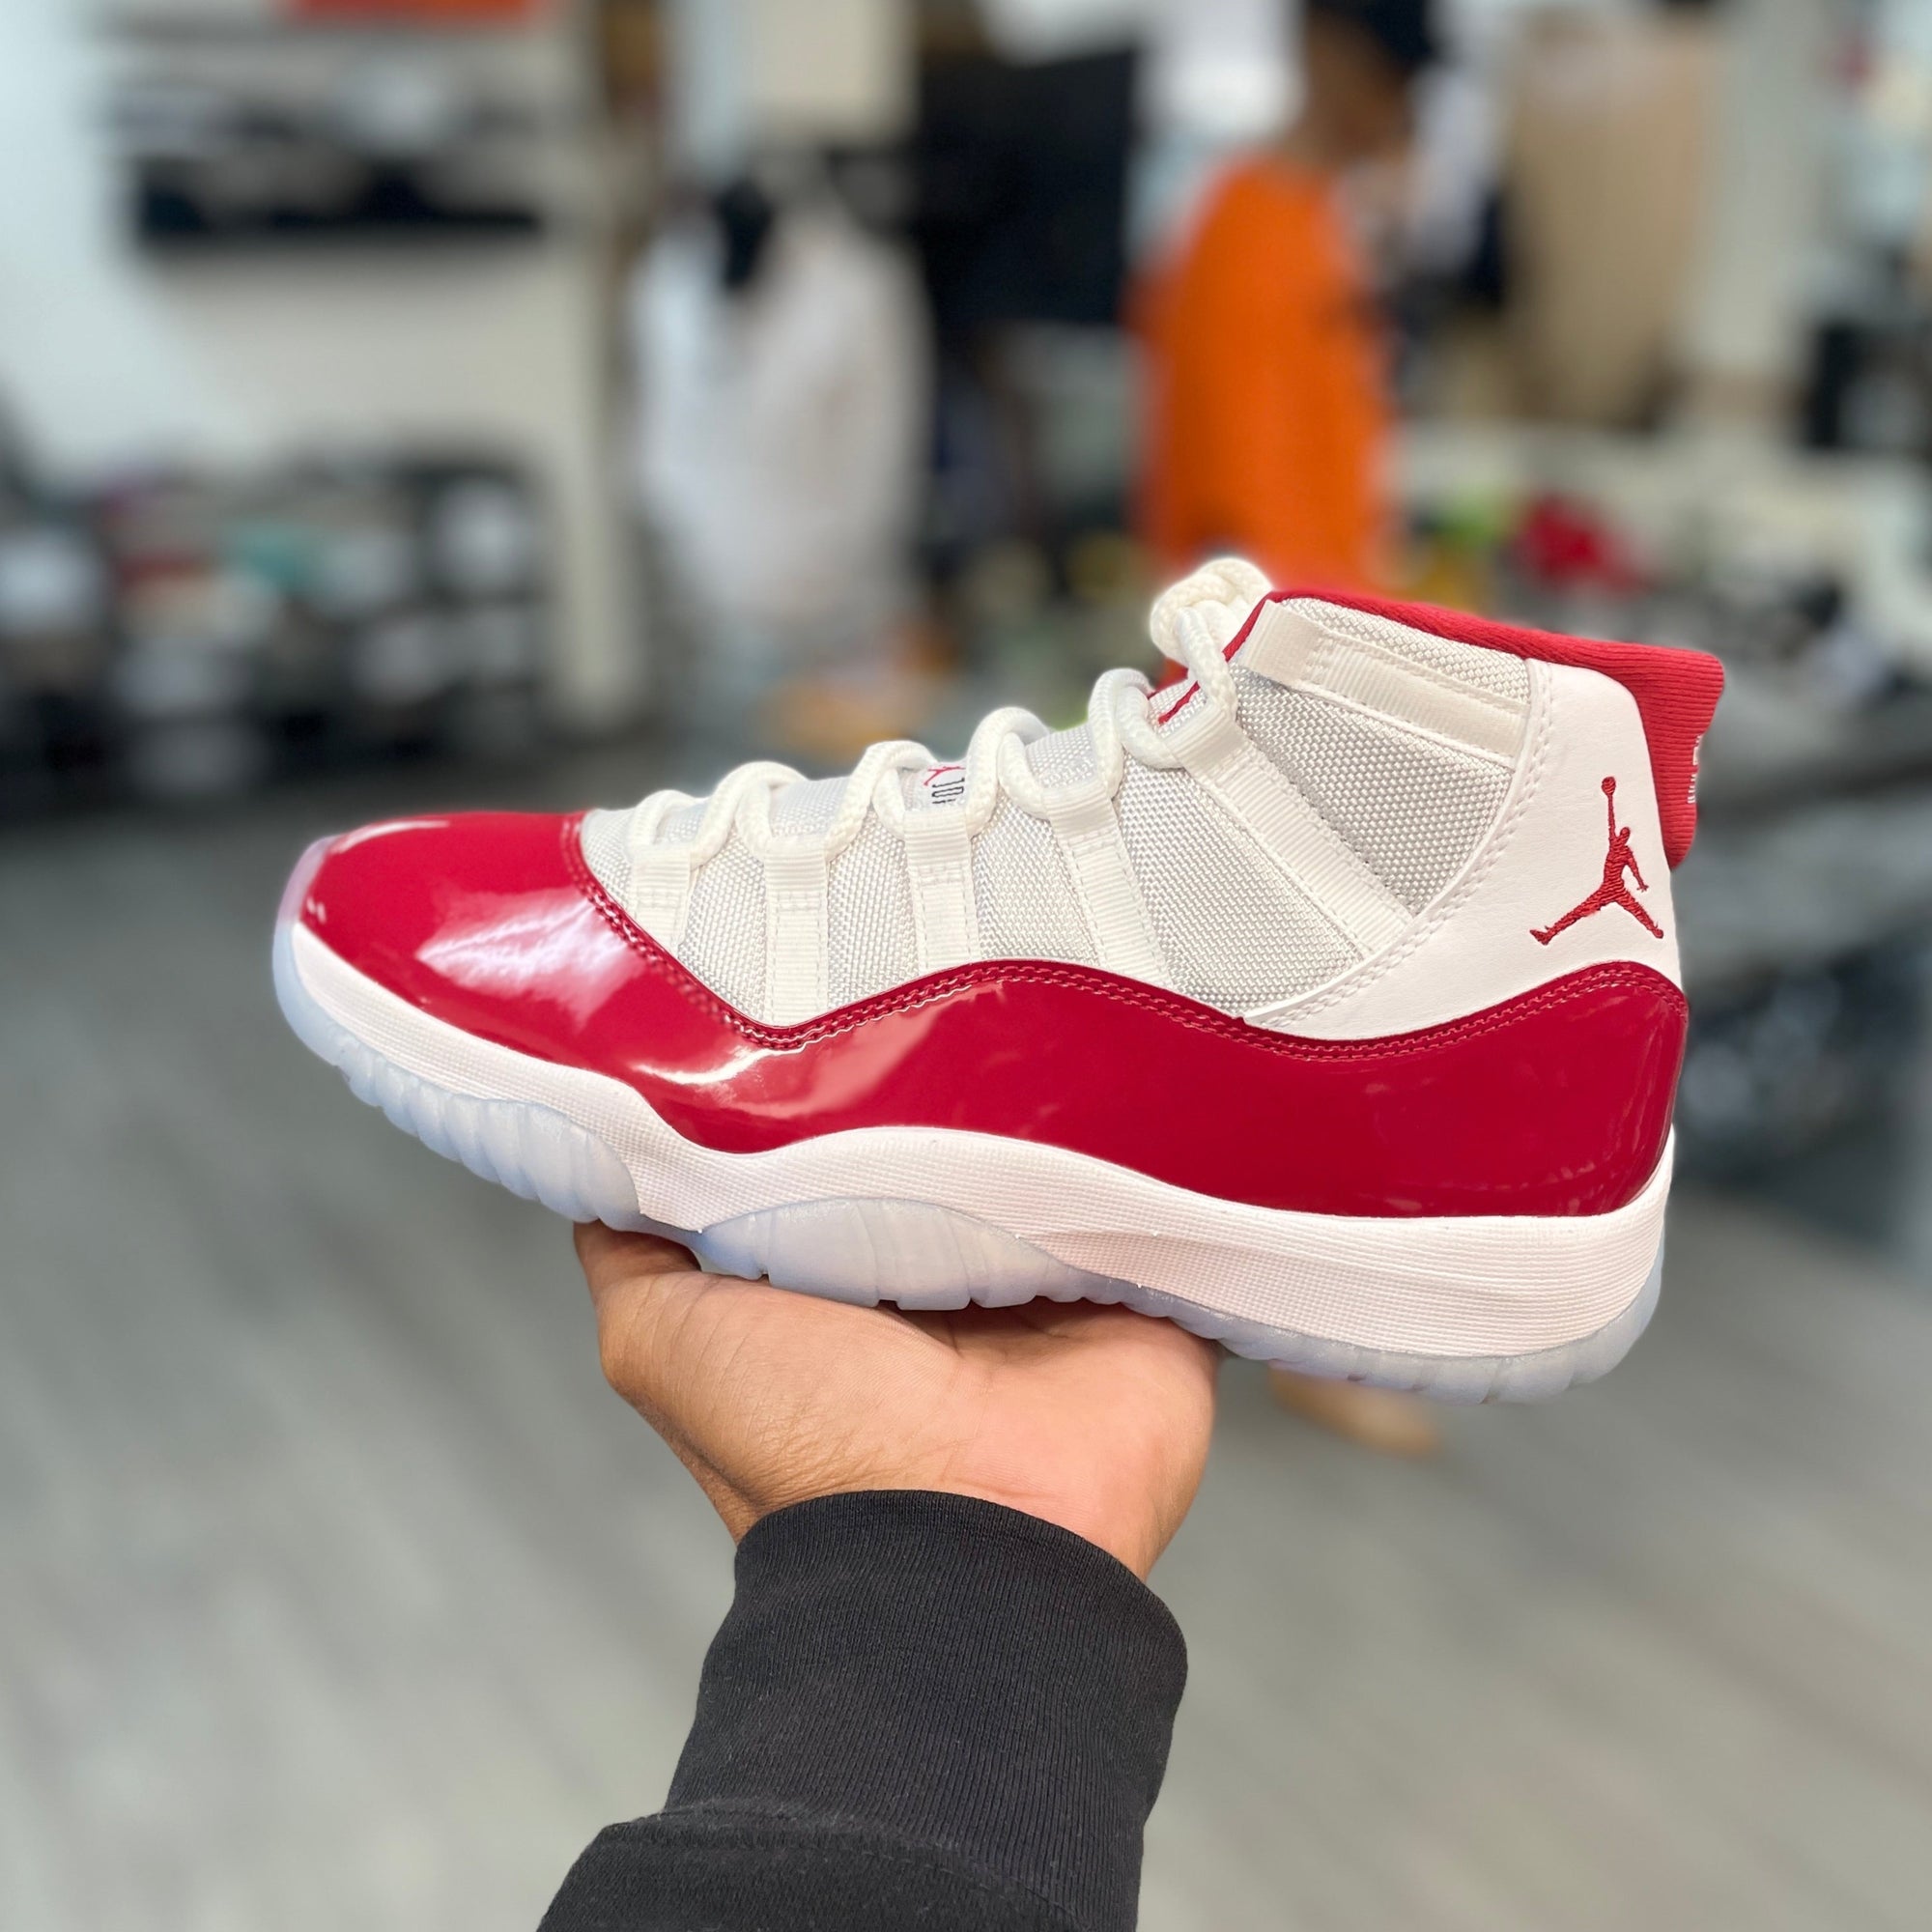 Jordan 11 Retro Cherry(2022)